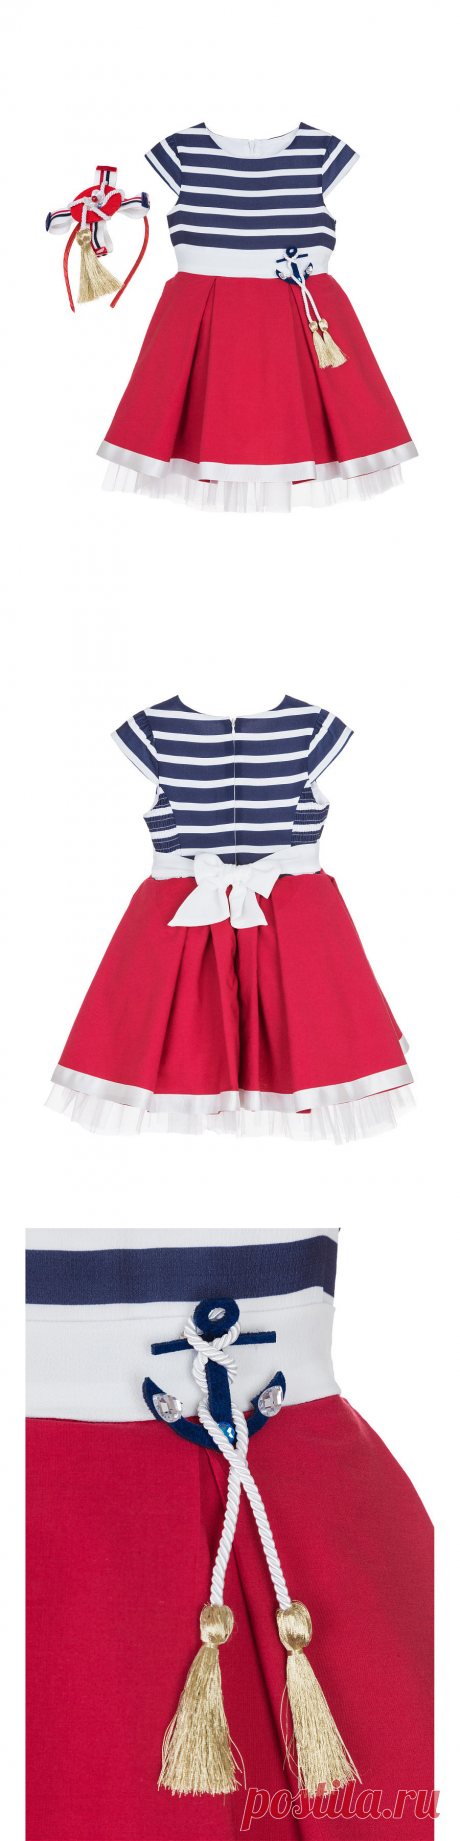 Платье+ободок+брошь для девочки lindissima Lindissima 5611424 в интернет-магазине Wildberries.ru